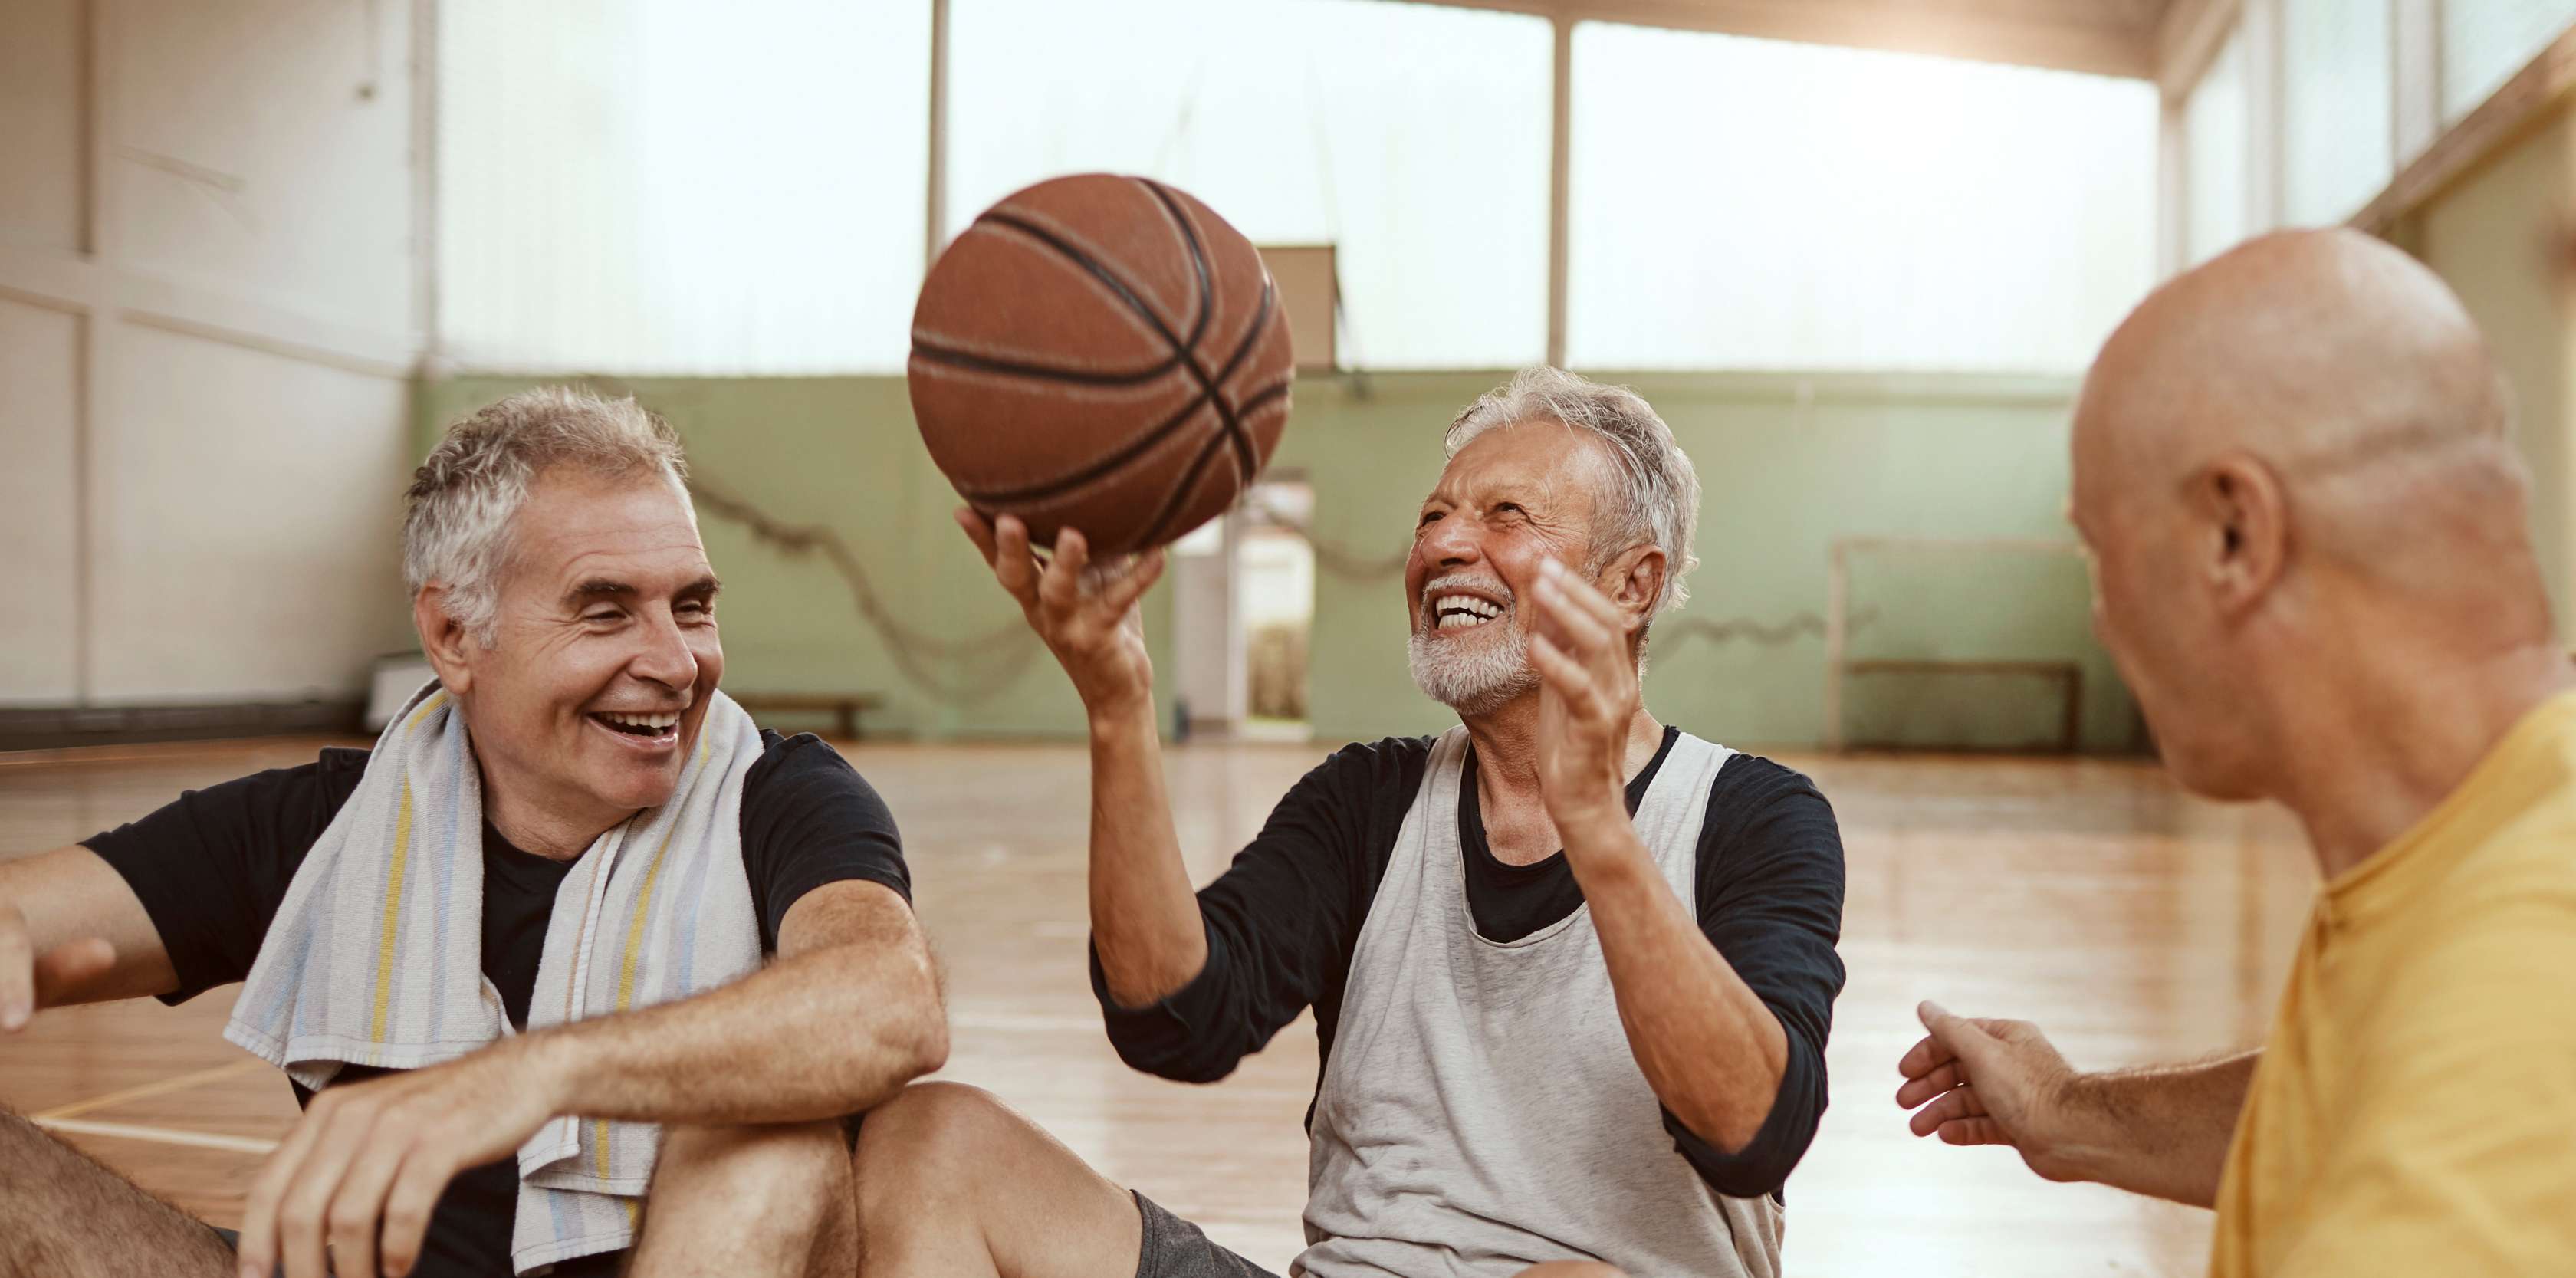 Drei ältere Männer sitzend lachend in Sportkleidung auf dem Boden, während einer von ihnen einen Basketball hochhält